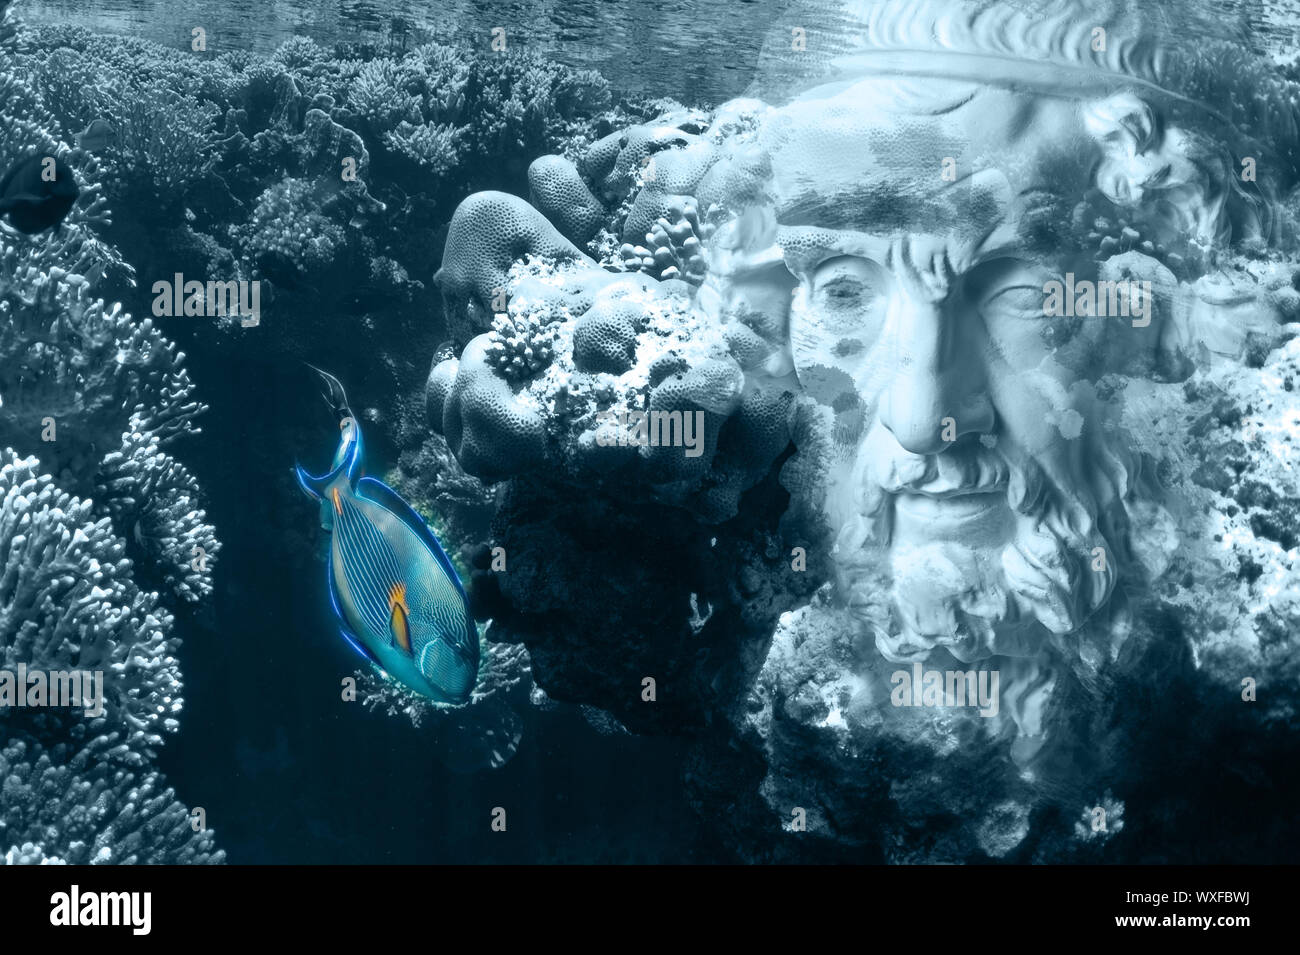 Visage de l'ancienne statue sur un fond sous-marin de coraux et poissons. L'art, l'aventure, l'archéologie sous-marine concept. Banque D'Images